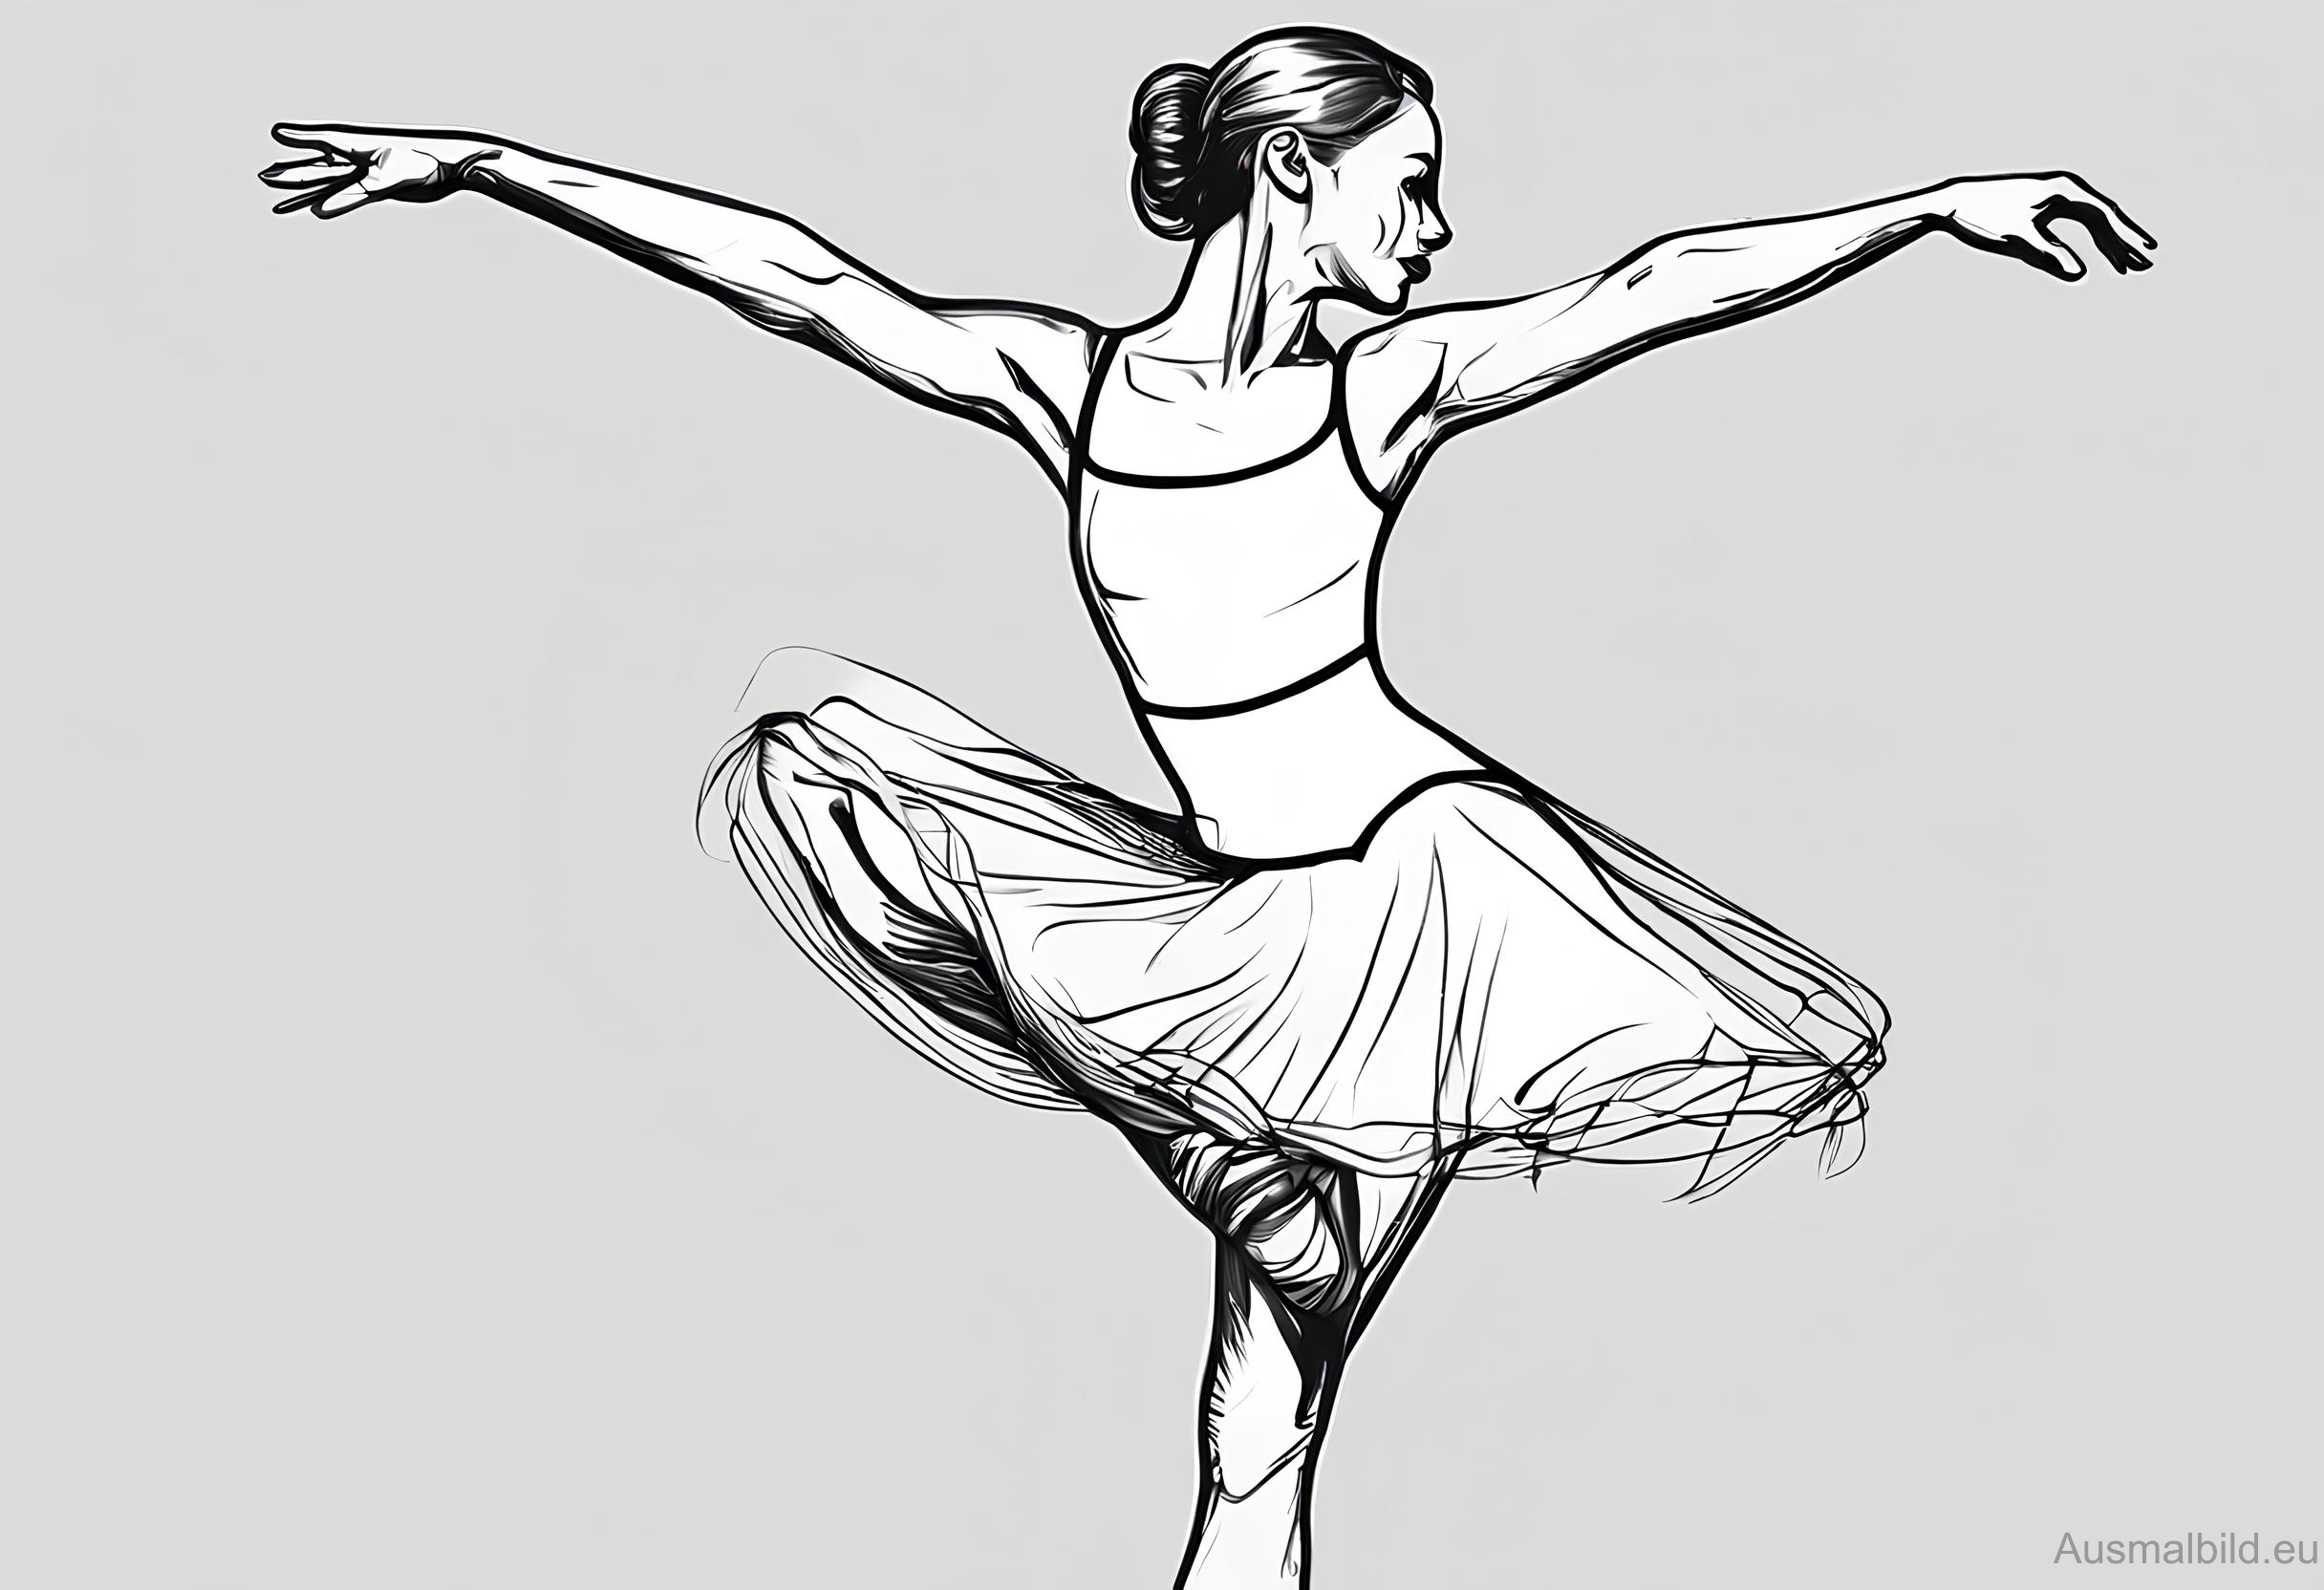 Ausmalbild: Balletttänzerin